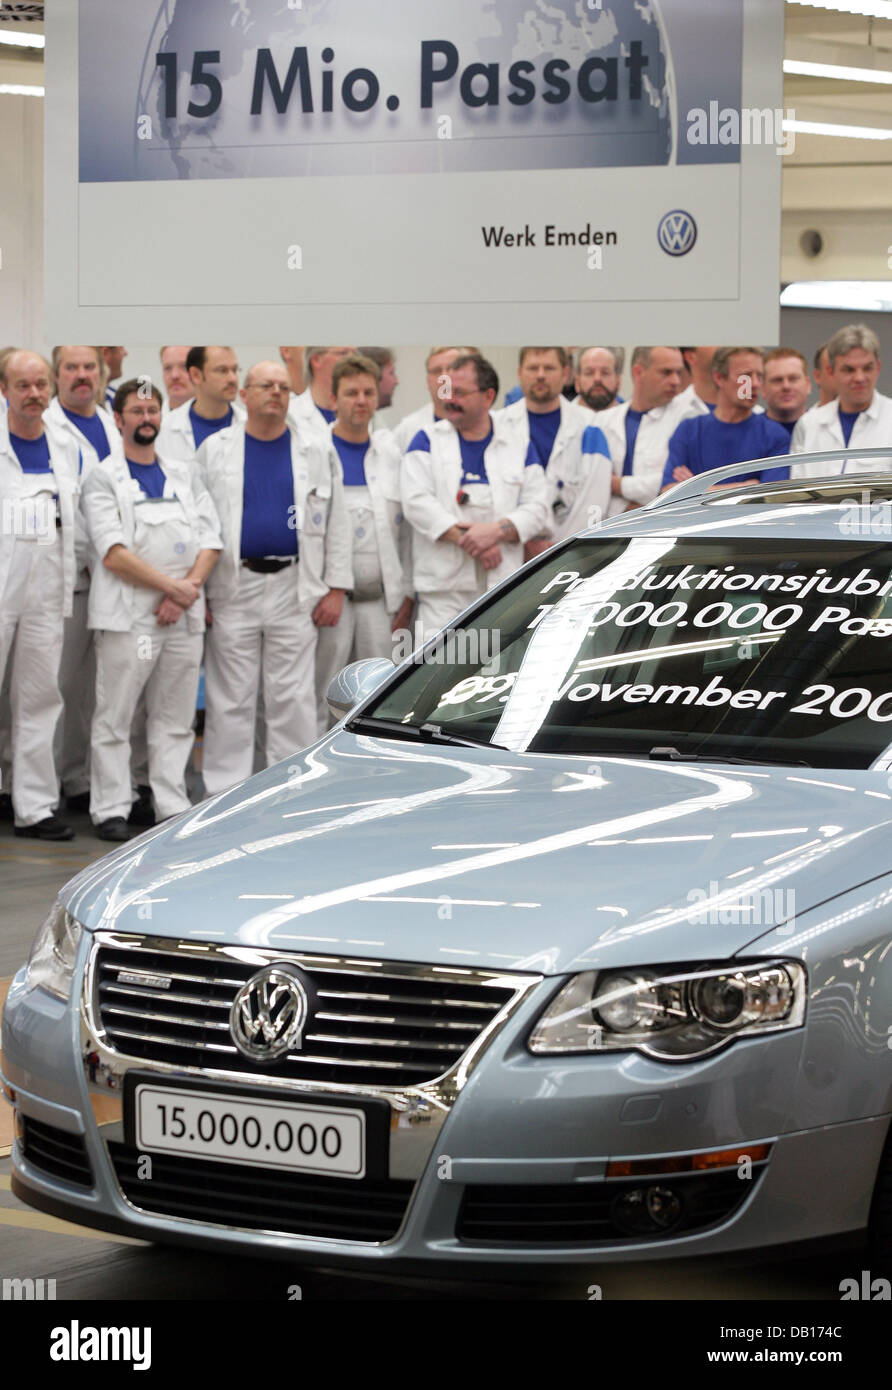 Der 15-millionste VW Passat ist der Automobil-Hersteller-Werk in Emden, Deutschland, 9. November 2007 ins Leben gerufen. Mitarbeiter nehmen auch die Zeremonie feiern die Passat-Produktion-Serie, die vor 34 Jahren begann. Das Jubiläumsmodell ist eine Arctic Blue Silver Version mit umweltfreundlicher BlueMotion-Technologie. VW die einzigartige Passat auf die Deutsche Knochenmark Spender Cent gespendet Stockfoto